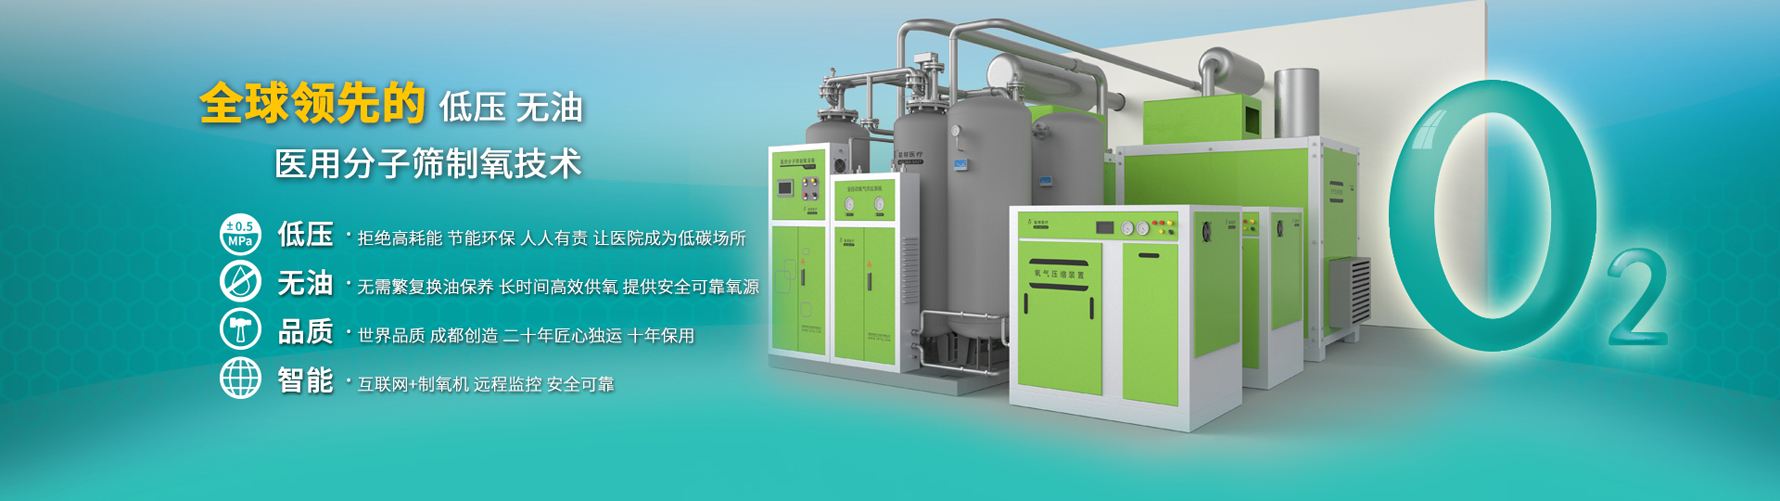 022重庆西部医疗器械展览会|2022重庆供氧系统制氧设备展览会"